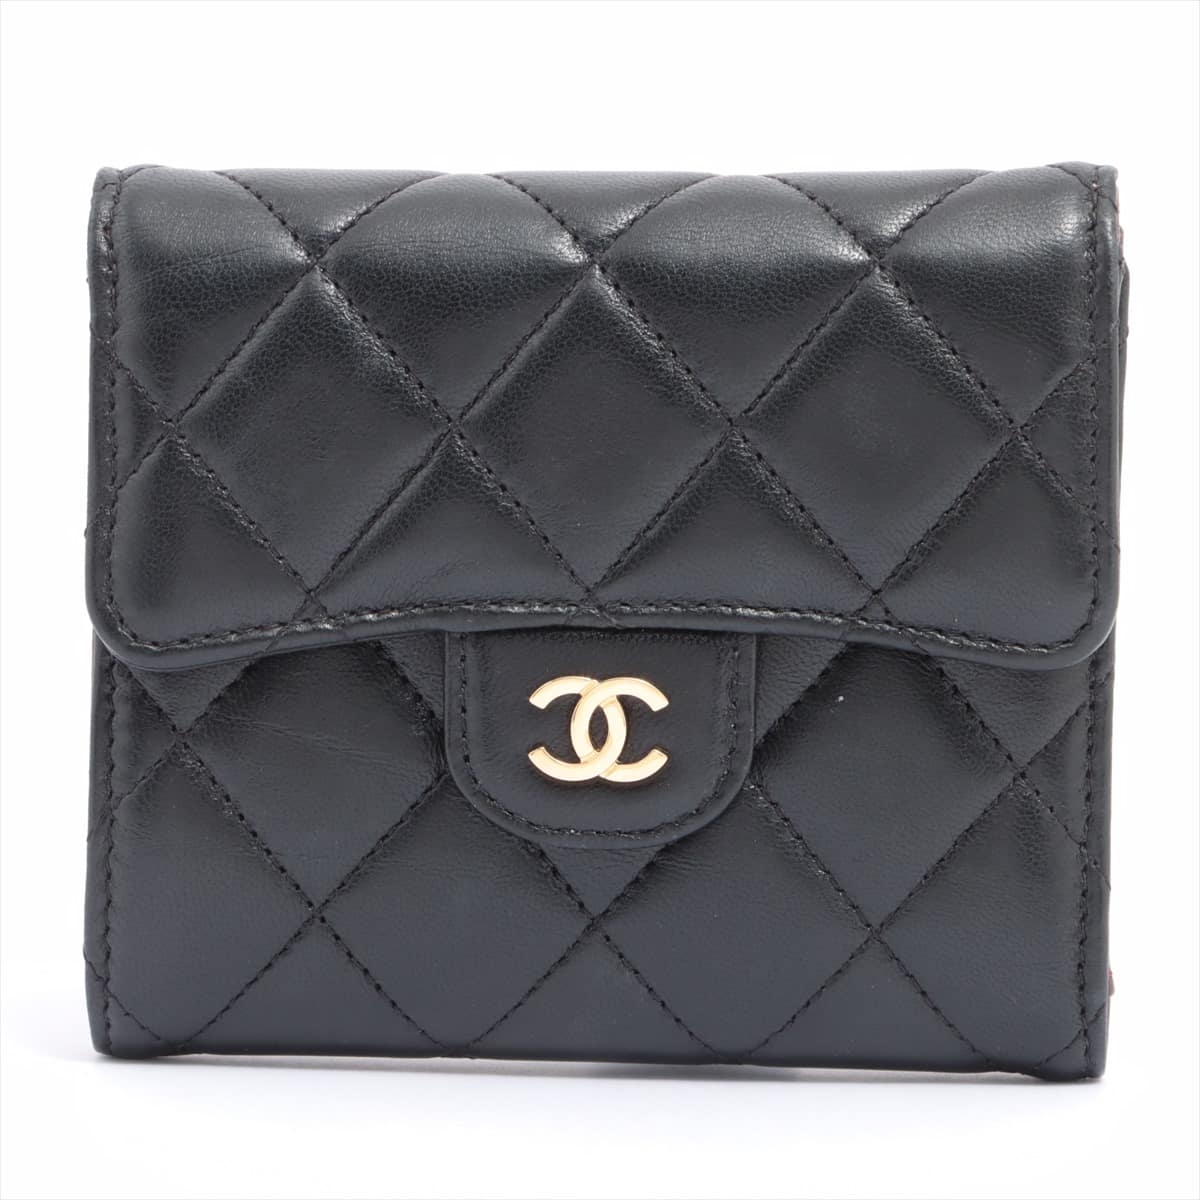 Chanel Matelasse Lambskin Wallet Black Gold Metal fittings 31st